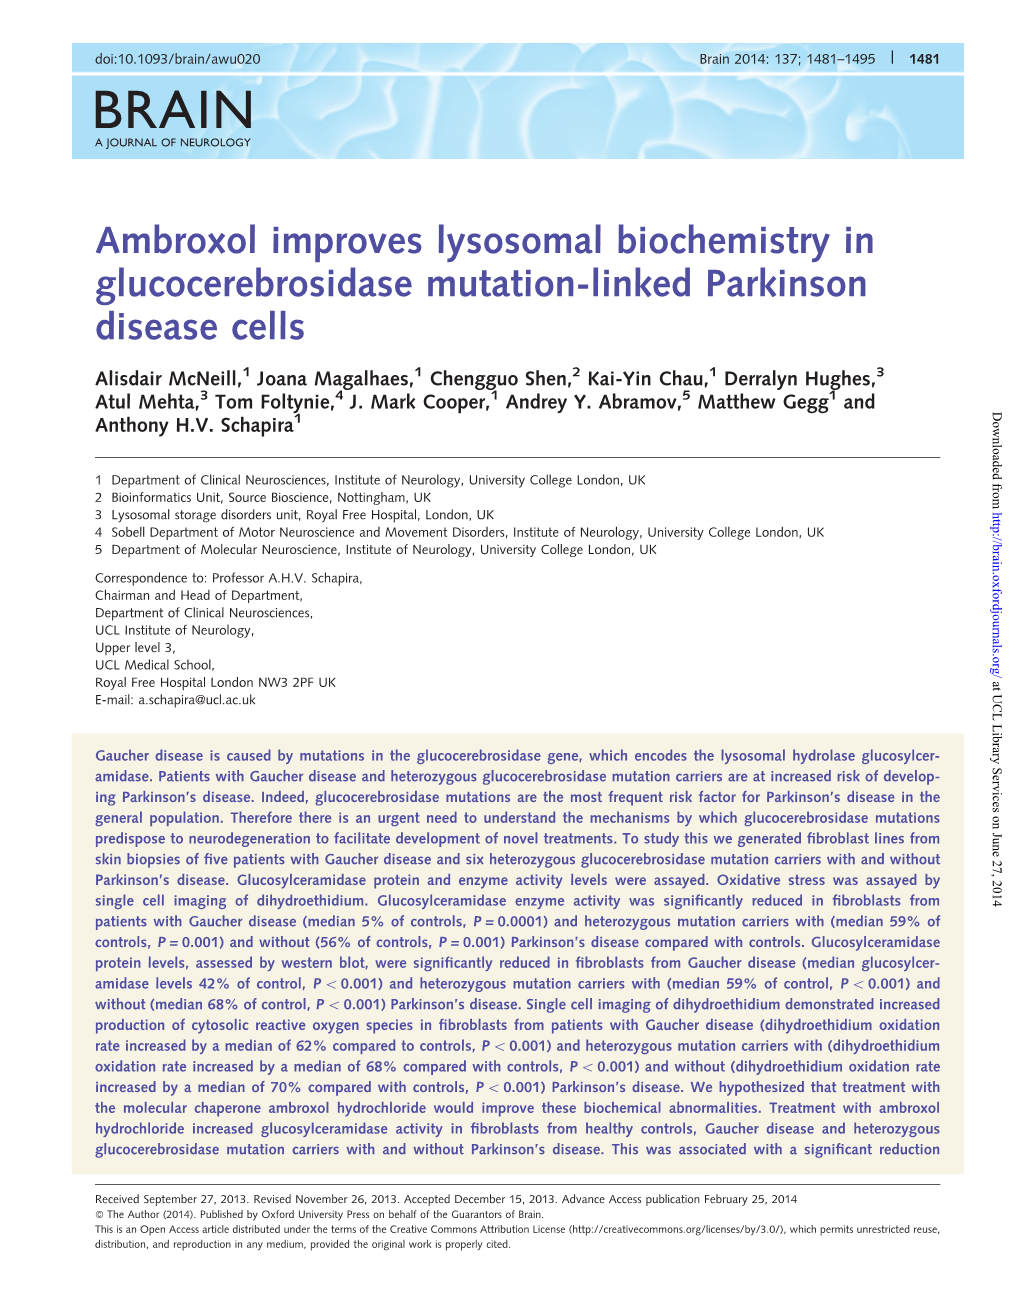 Ambroxol Improves Lysosomal Biochemistry in Glucocerebrosidase Mutation-Linked Parkinson Disease Cells